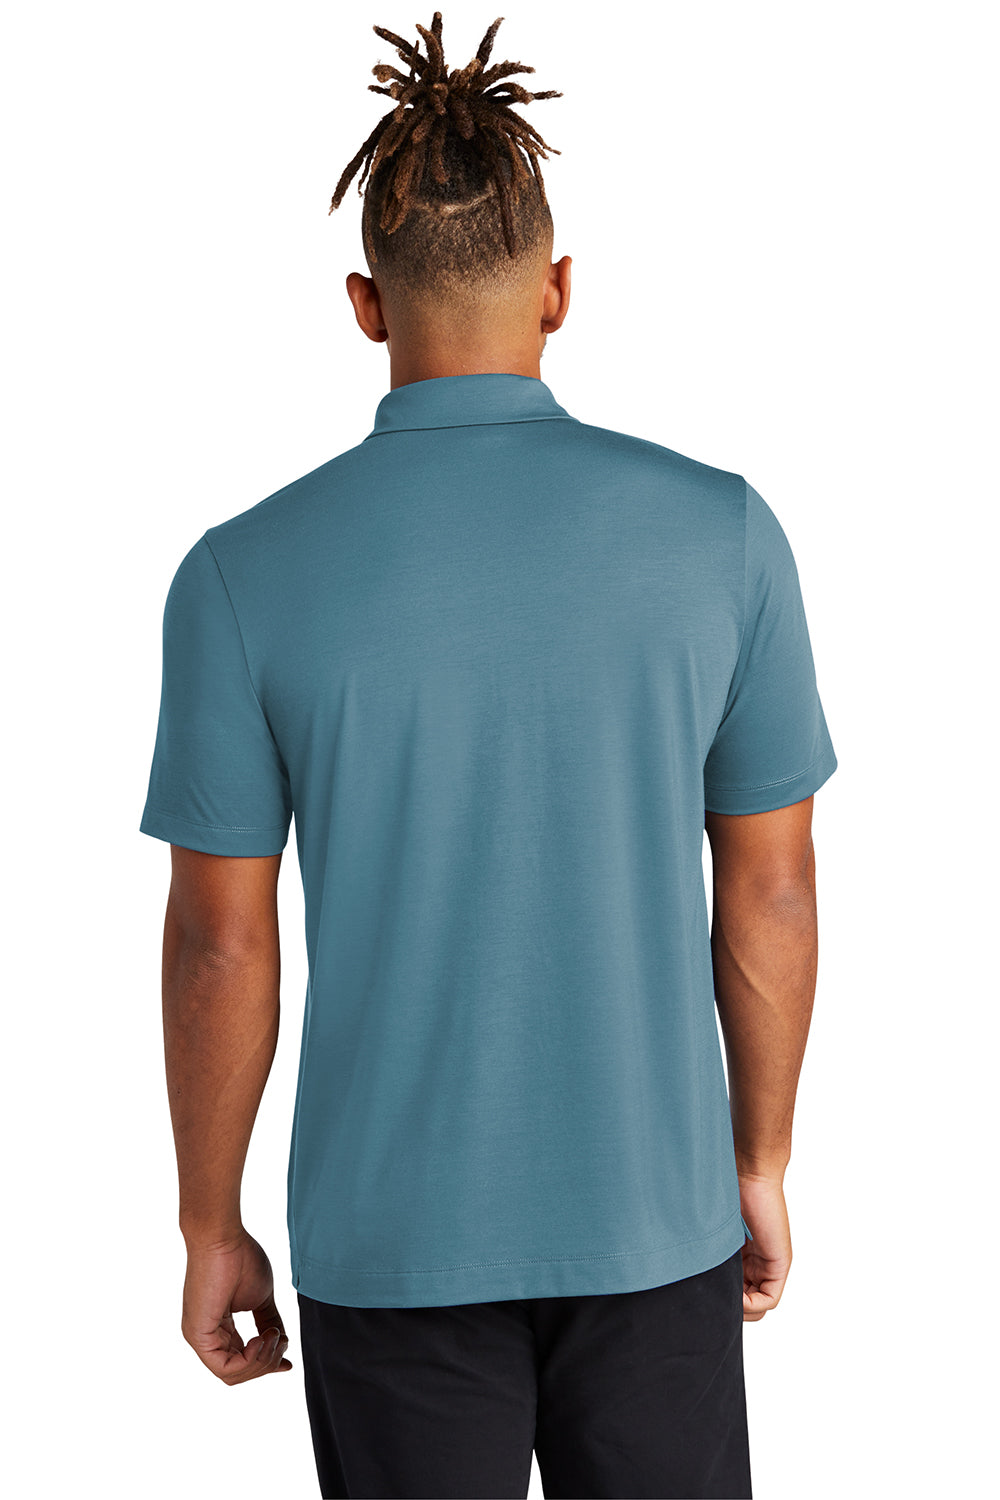 Mercer+Mettle MM1014 Mens Moisture Wicking Short Sleeve Polo Shirt Parisian Blue Back